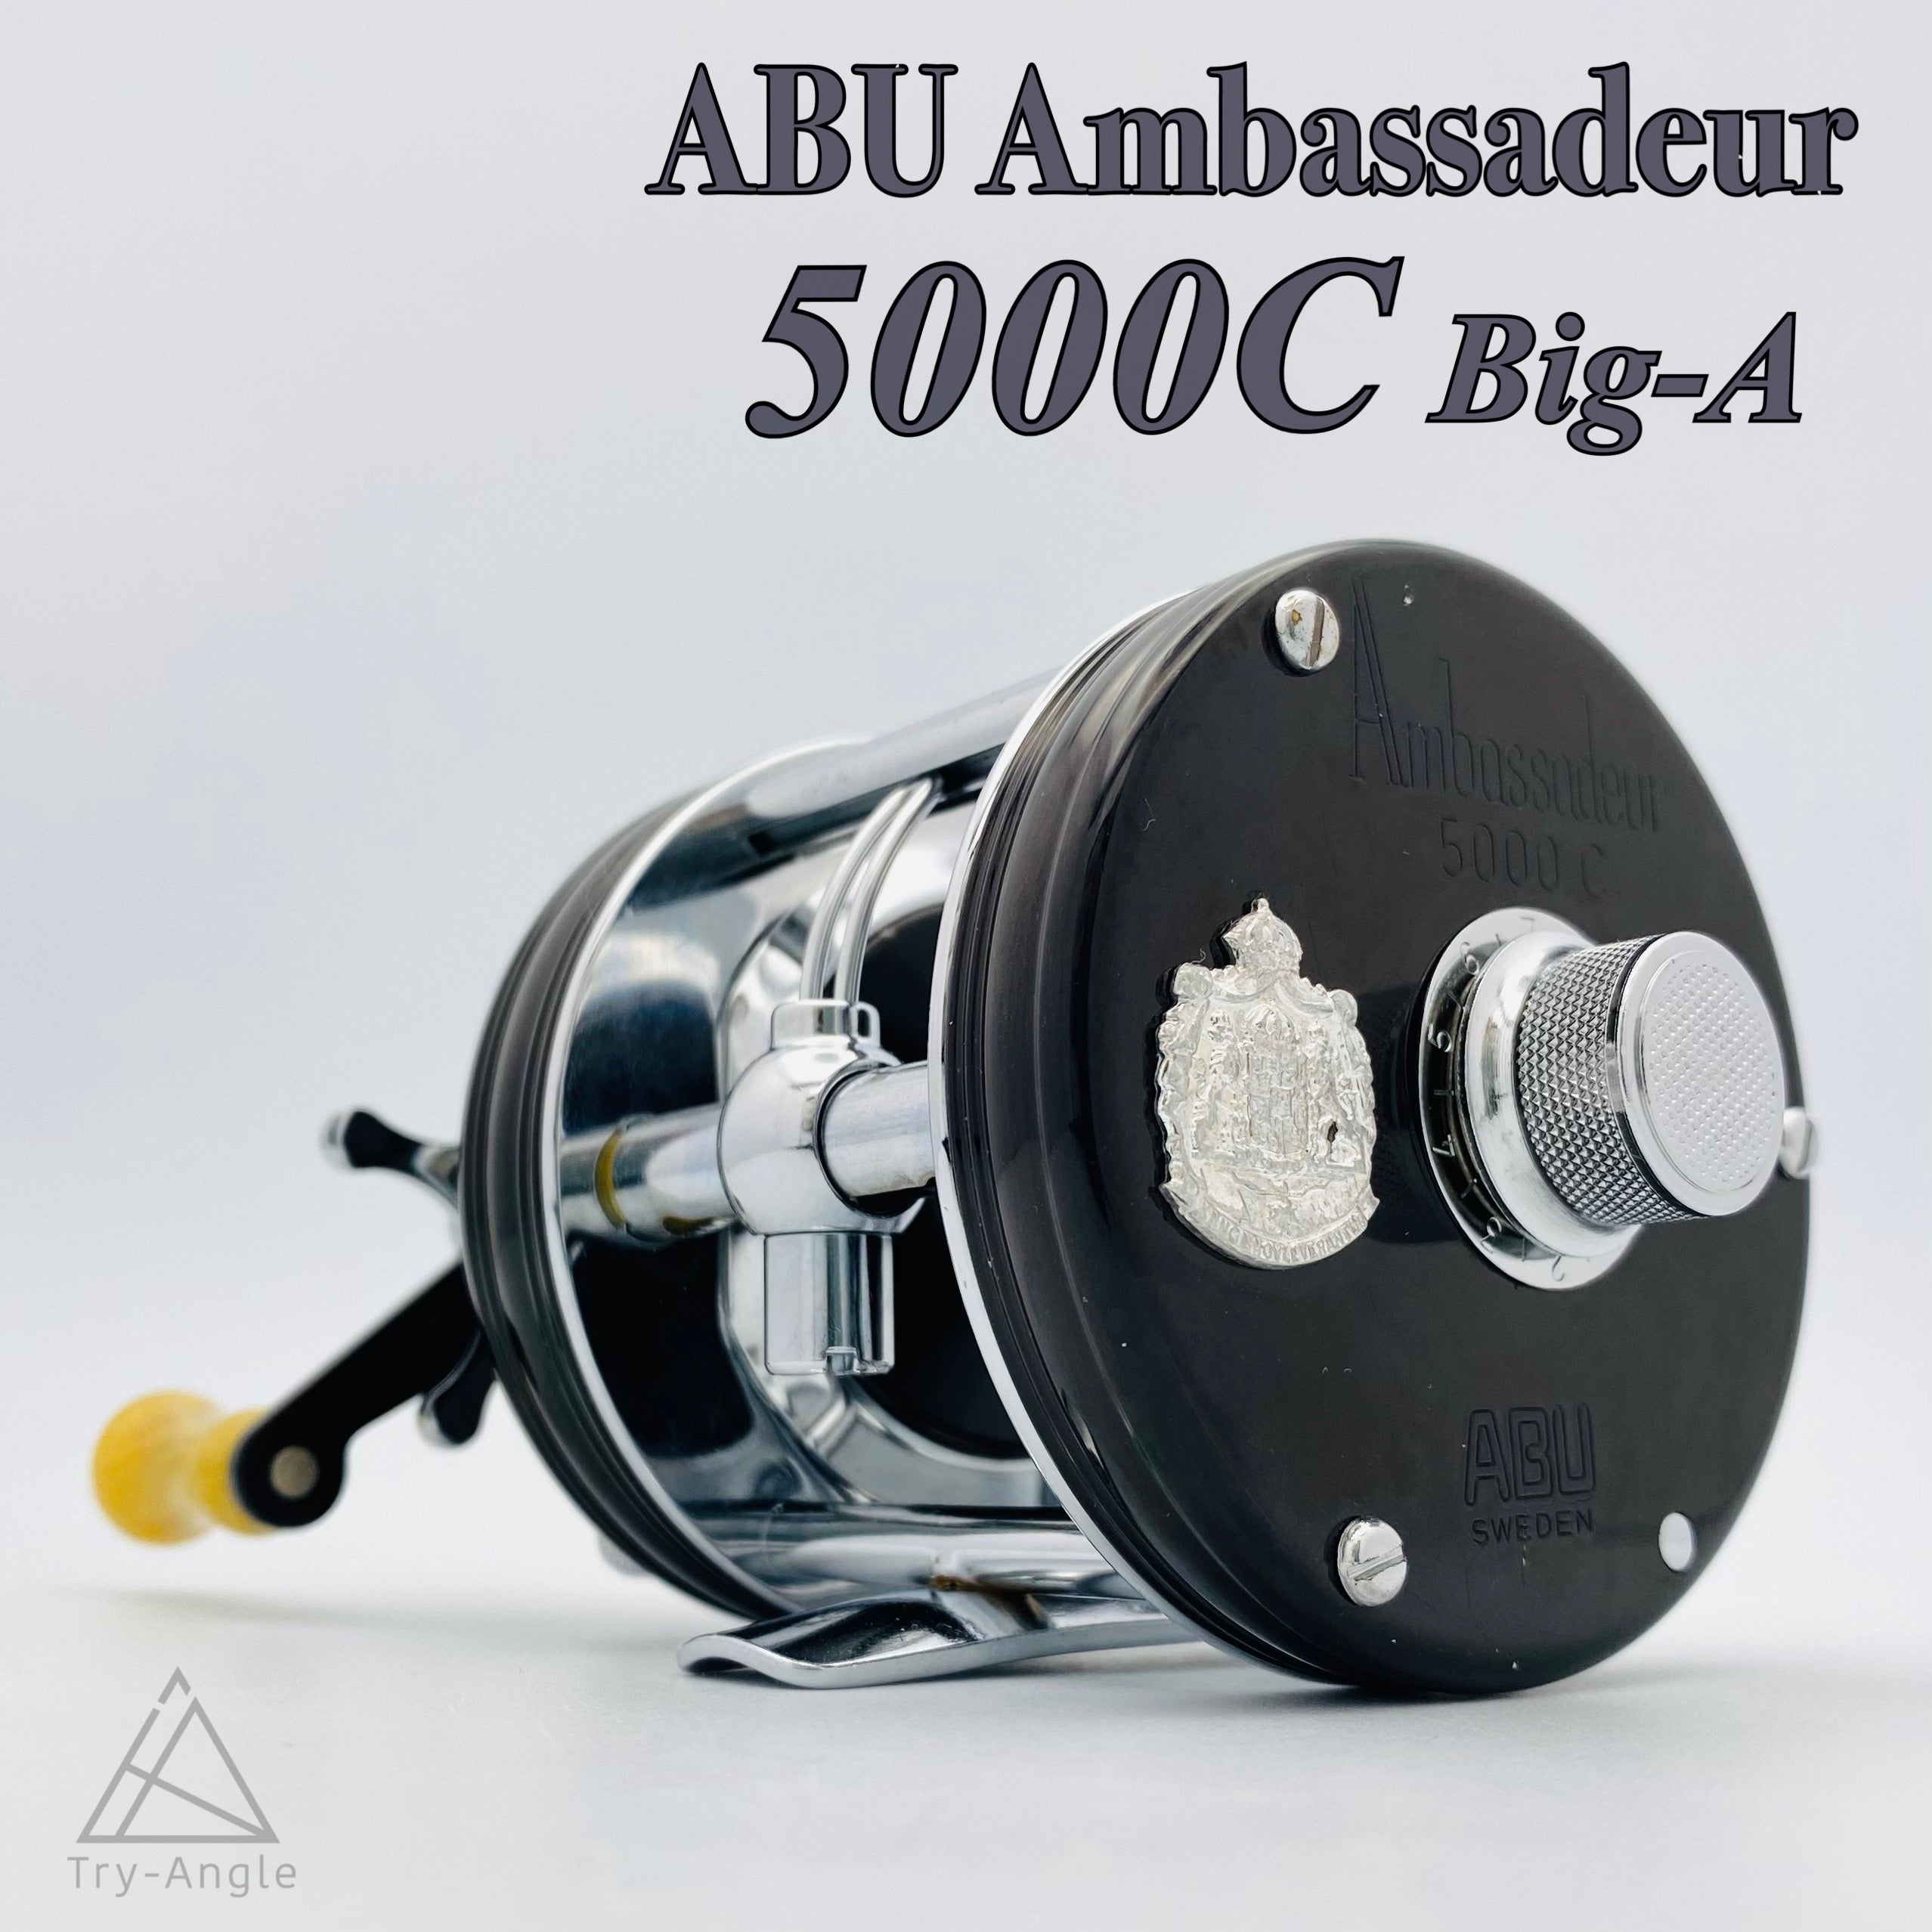 Abu Ambassadeur 5000C Big-A 730301